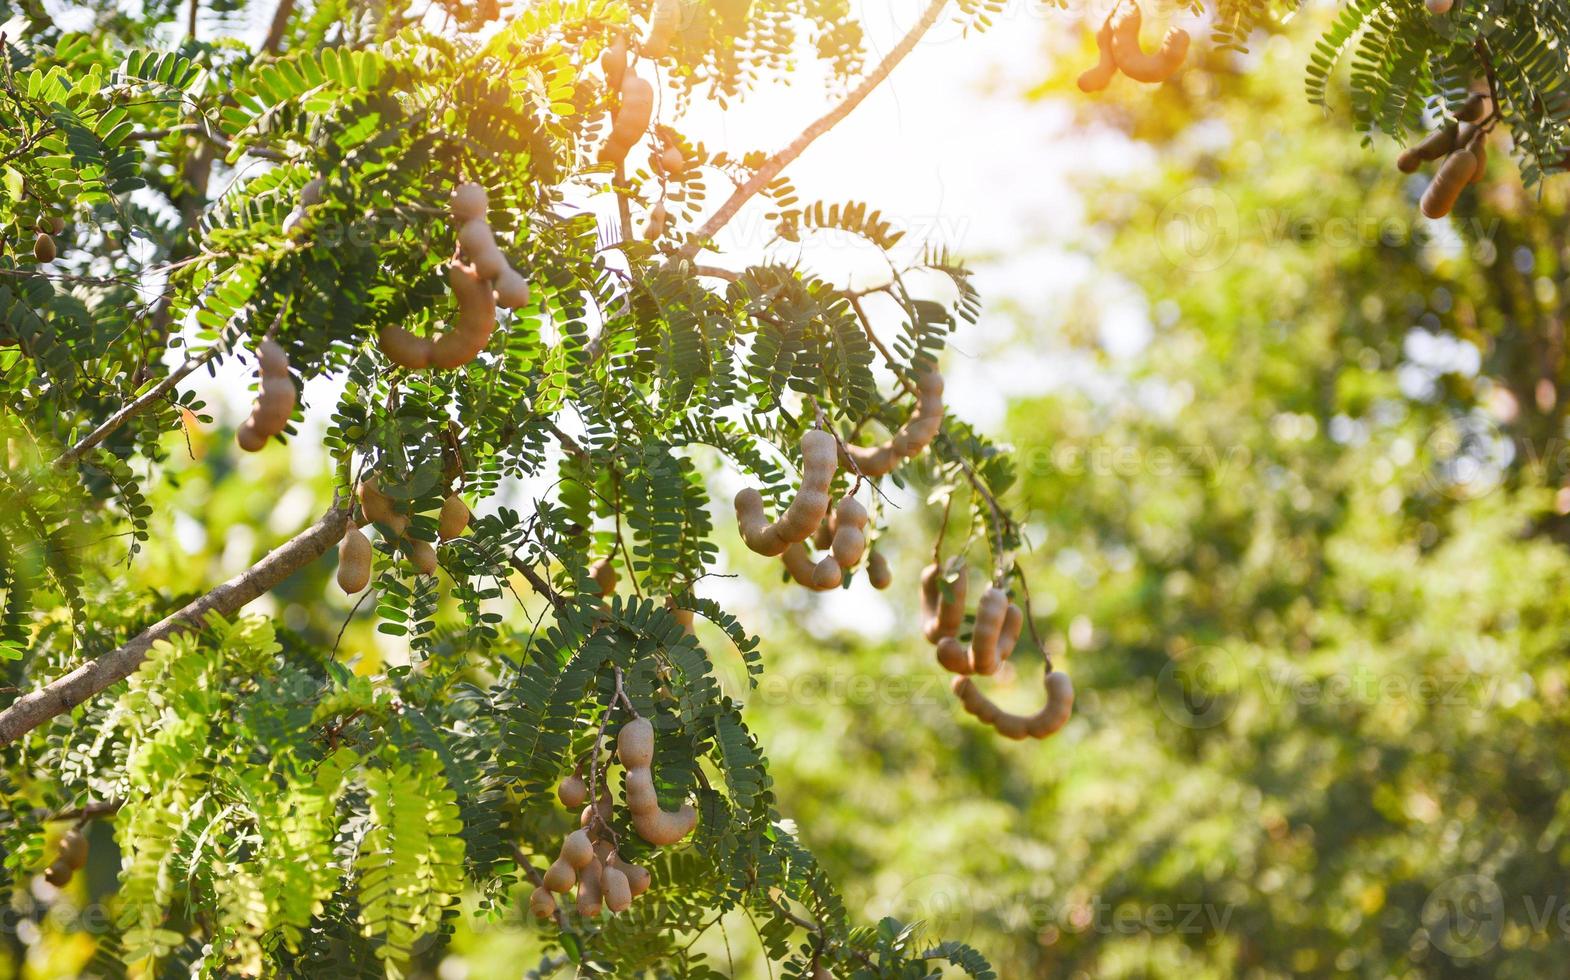 tamarind träd, mogen tamarind frukt på träd med löv i sommar bakgrund, tamarind plantage jordbruksgård fruktträdgård tropisk trädgård foto